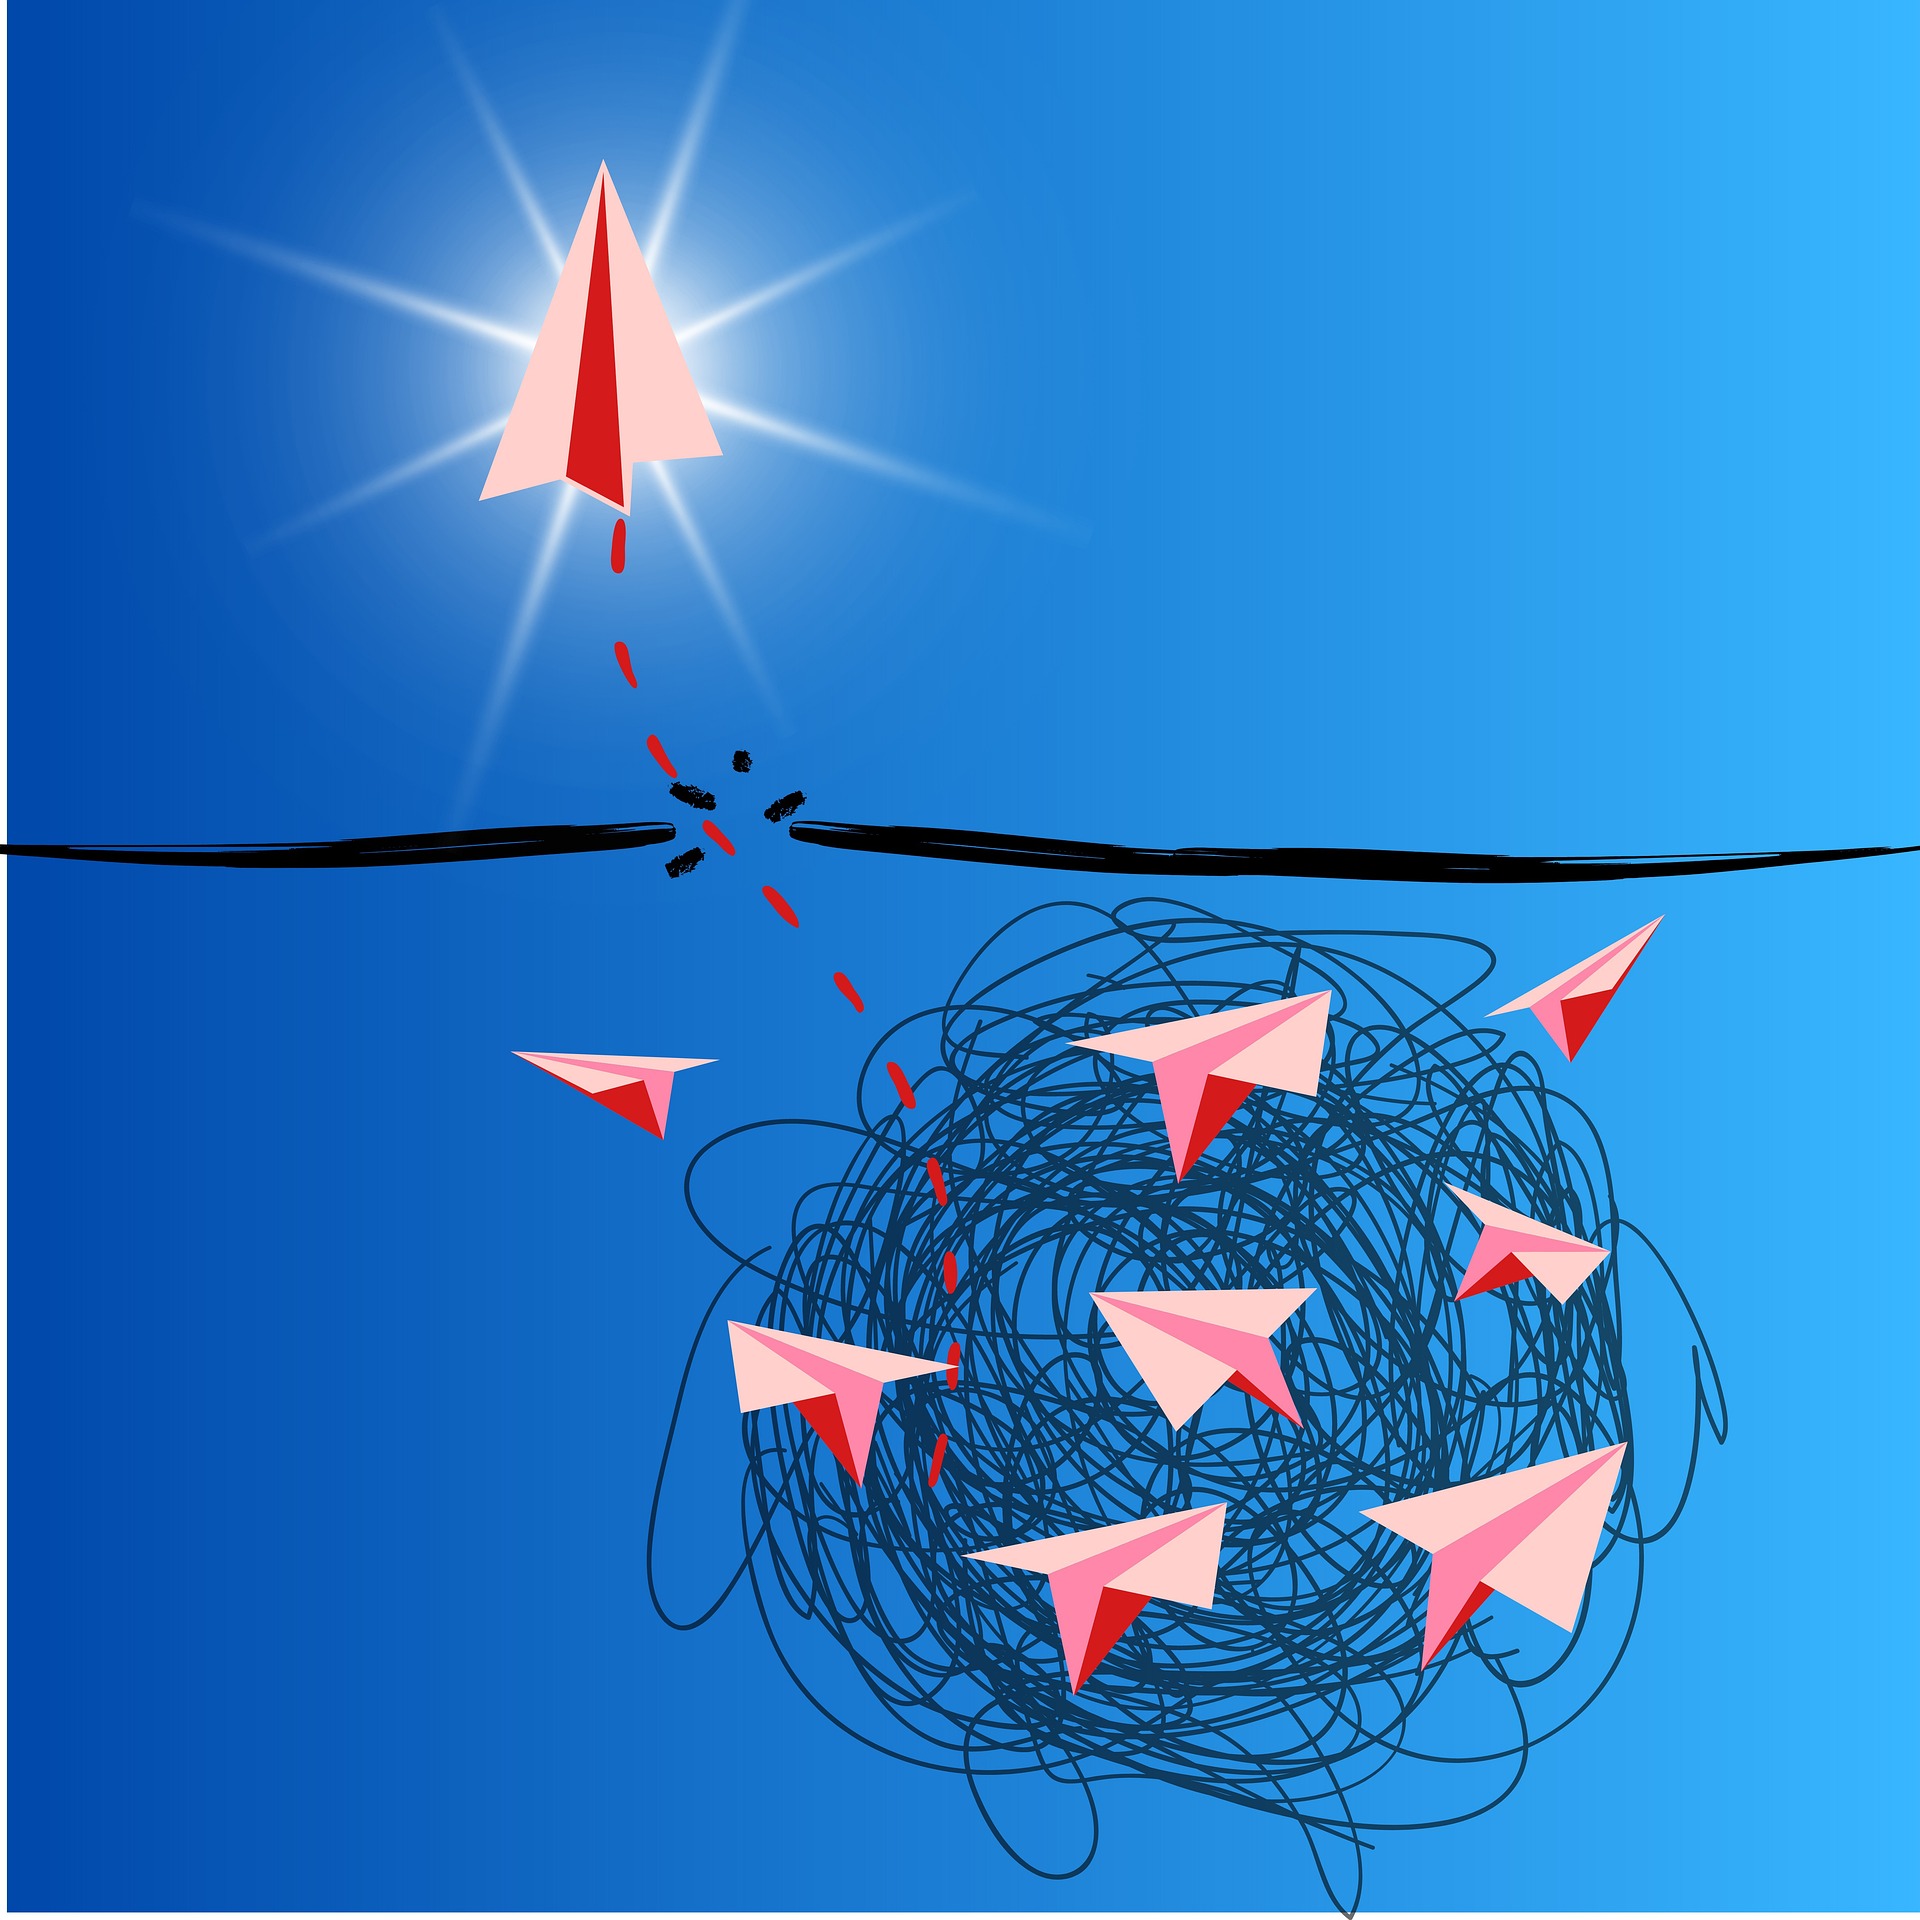 Ein roter Papierflieger, der mit Gesundheit aus einem Nest von Papierflieger fliegt.